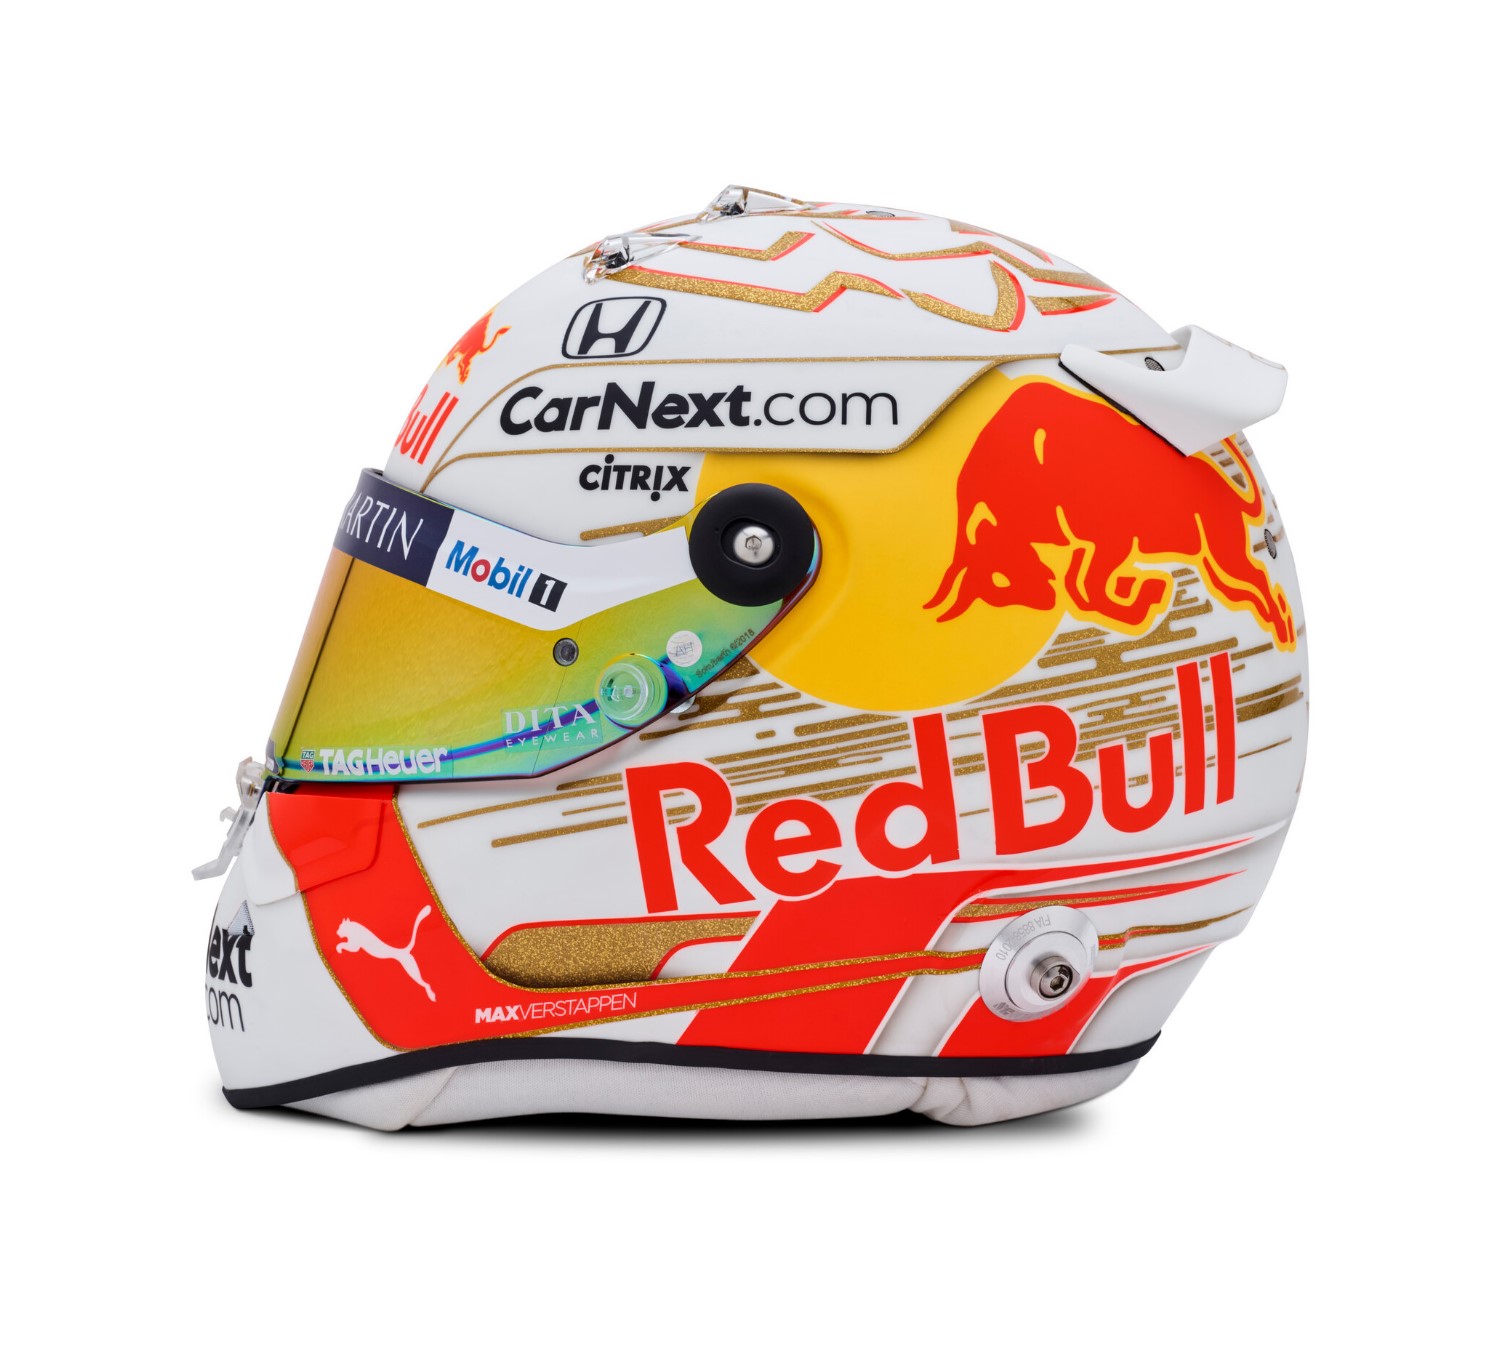 Verstappen's new helmet